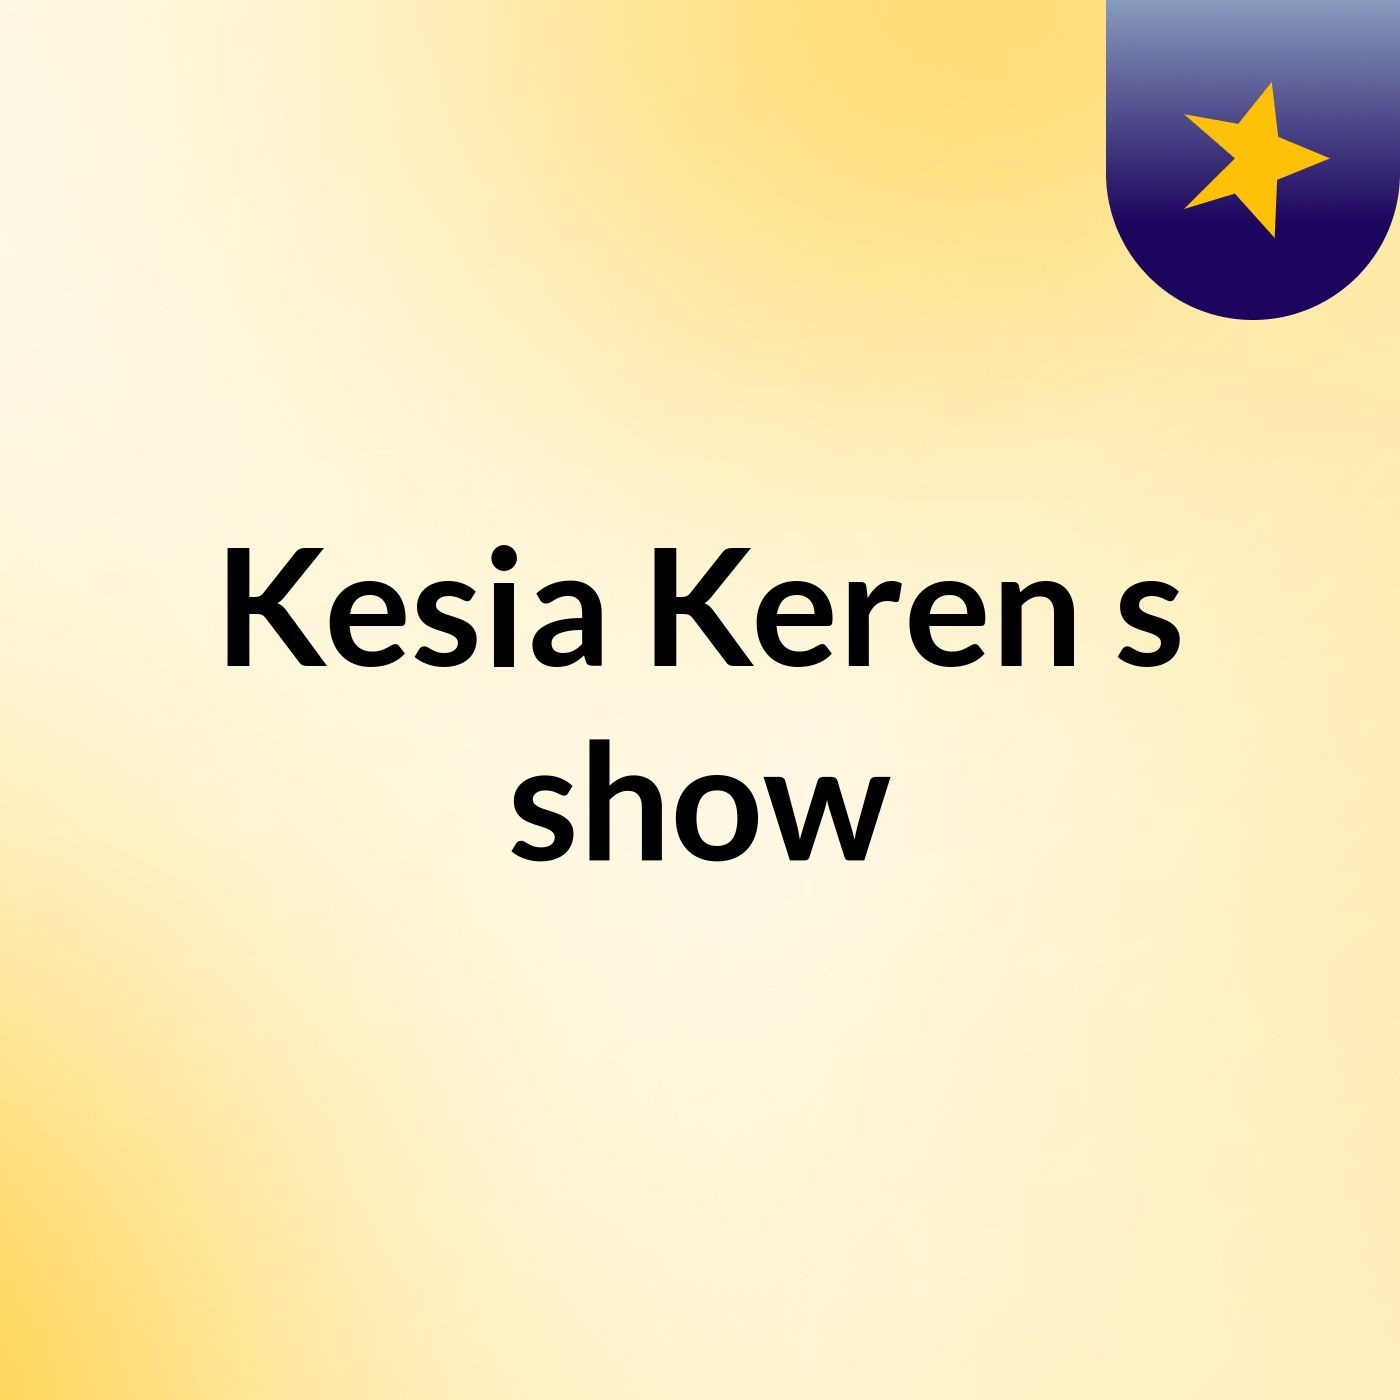 Kesia Keren's show